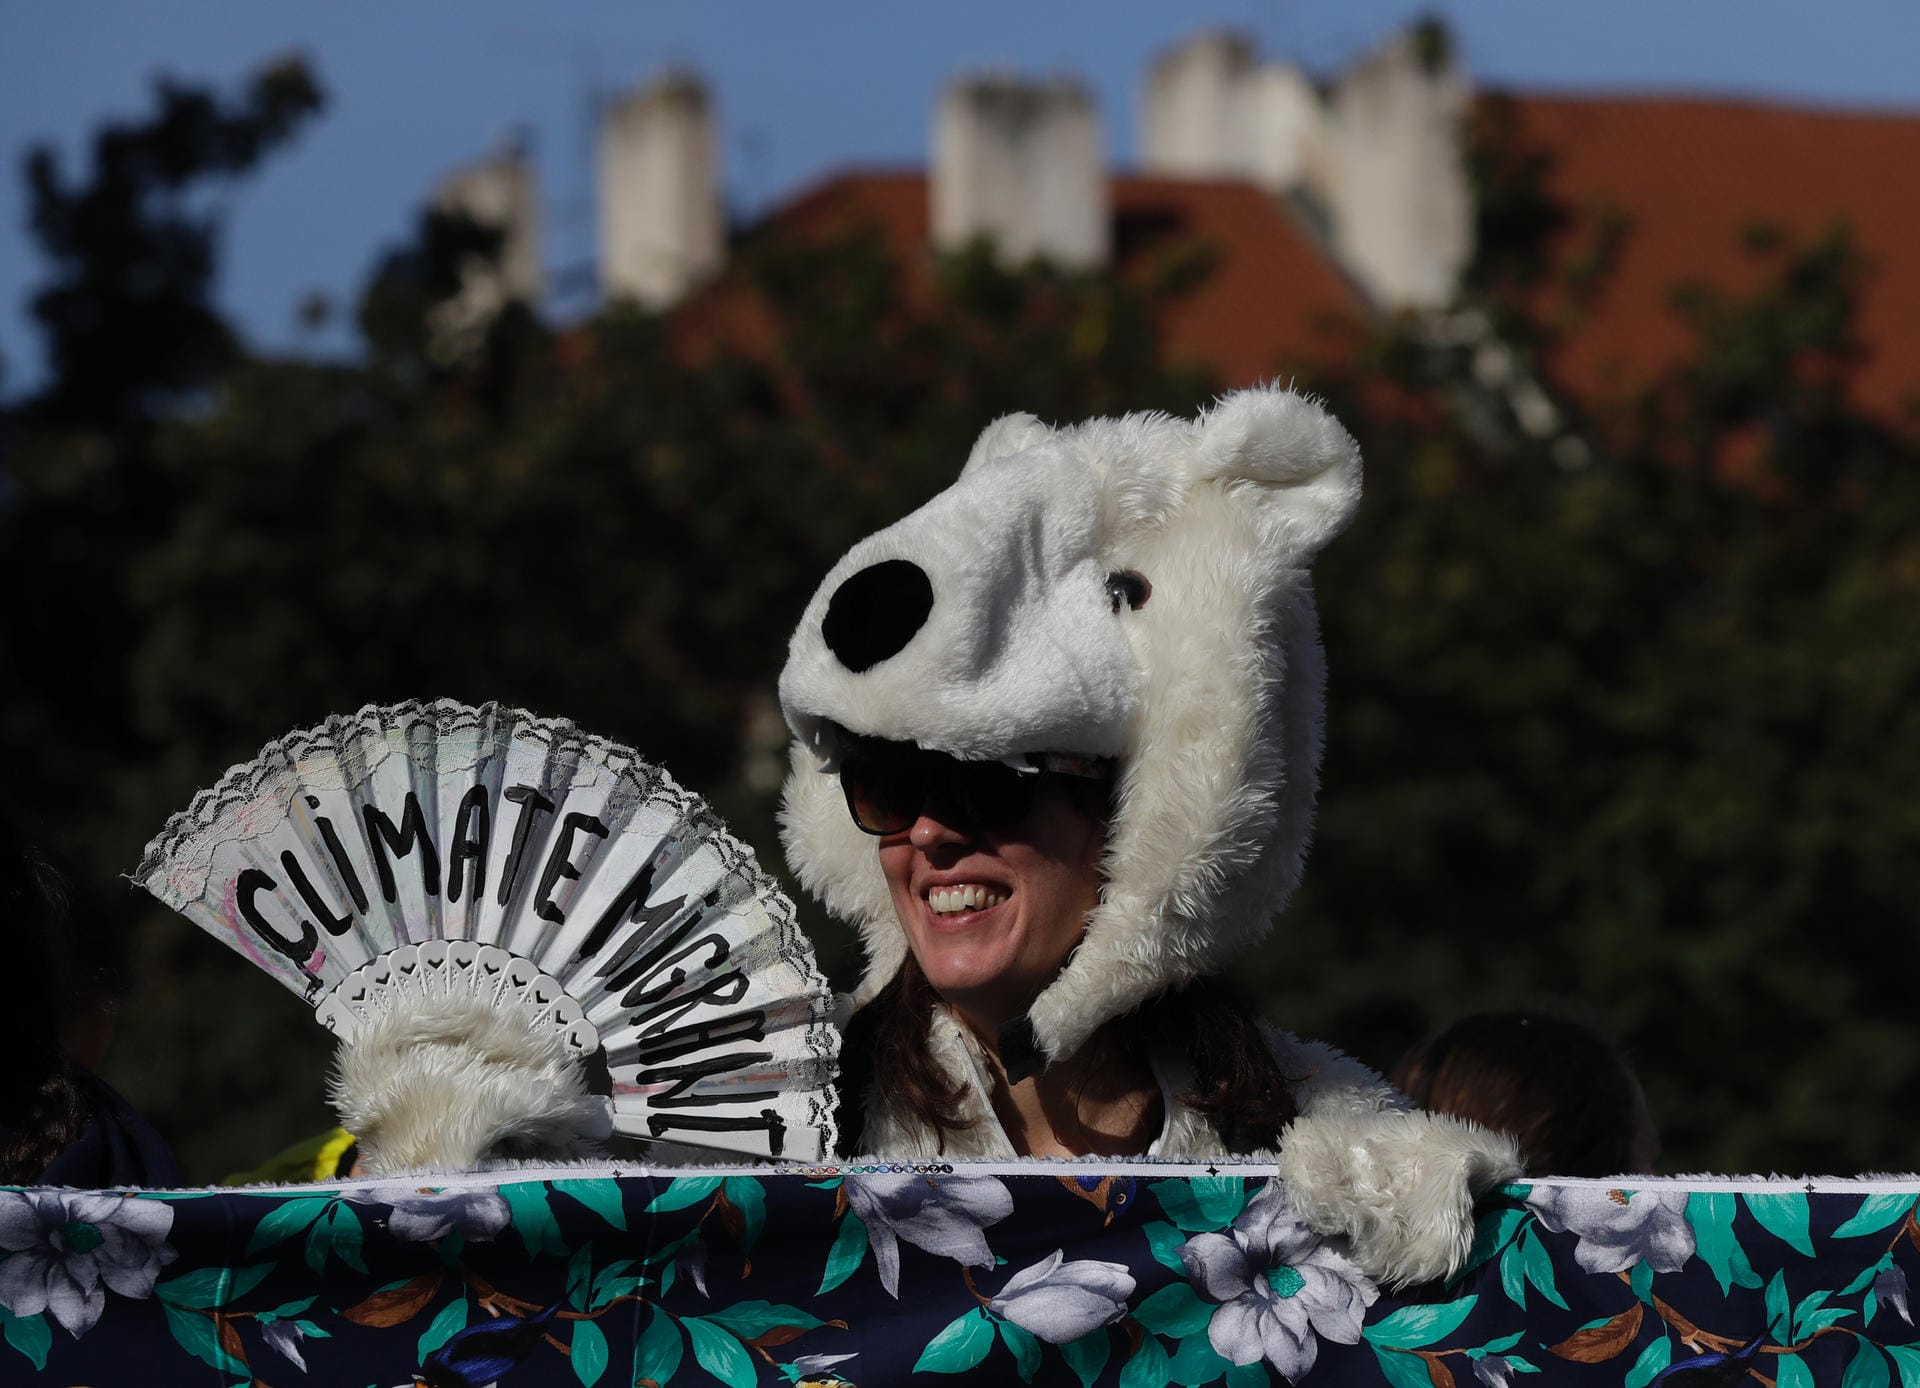 Auch in Prag wird demonstriert. Eine Teilnehmerin einer Demonstration trägt ein Eisbärenkostüm.